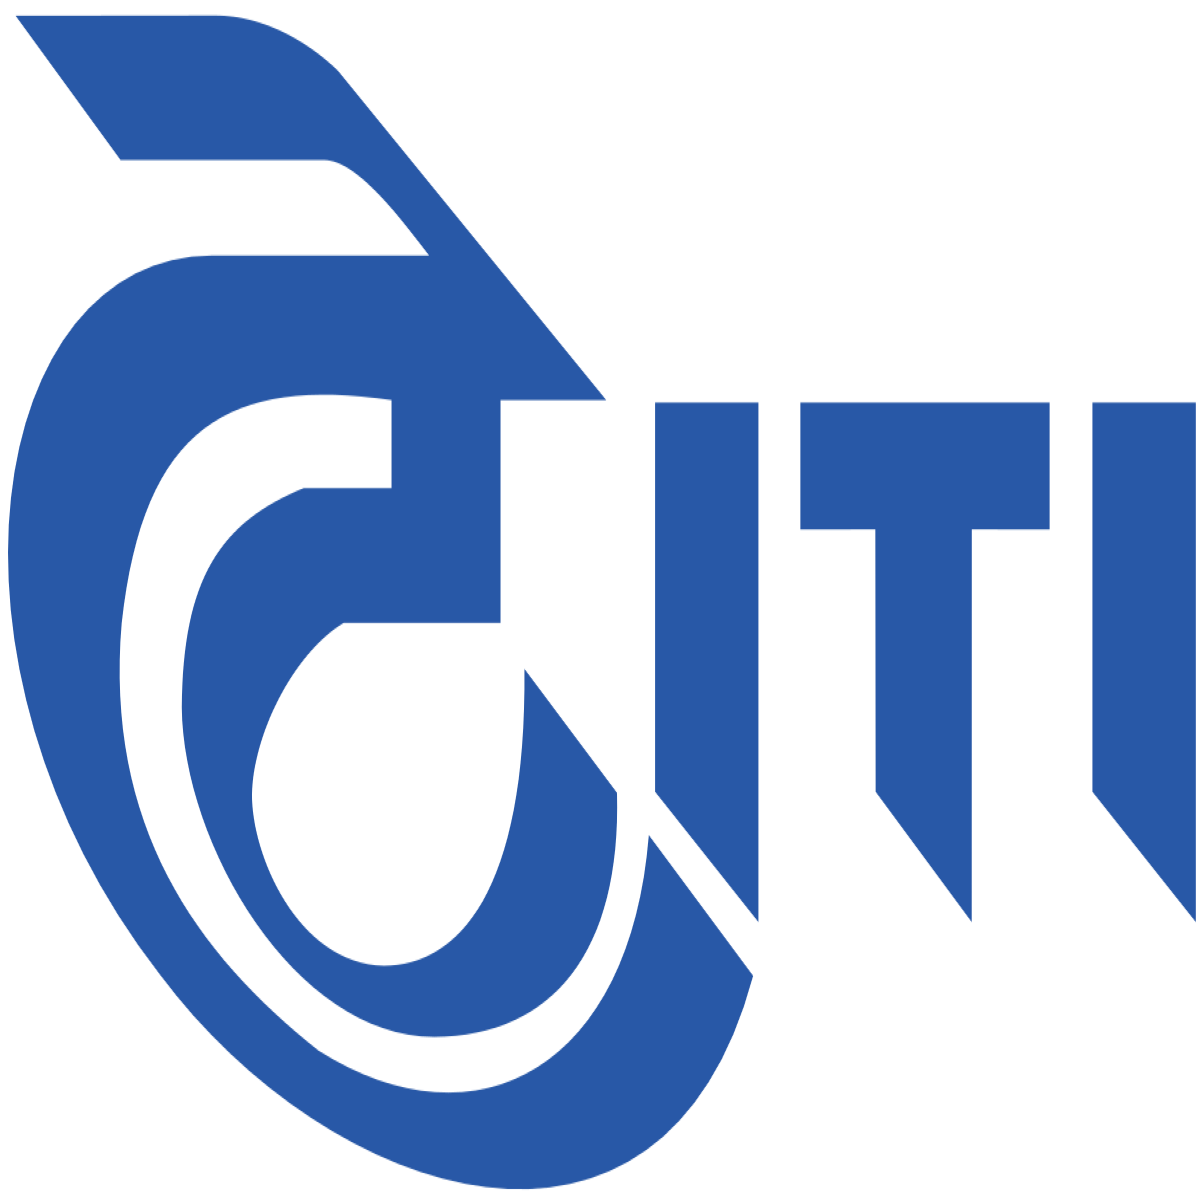 ITI_Limited_logo.svg